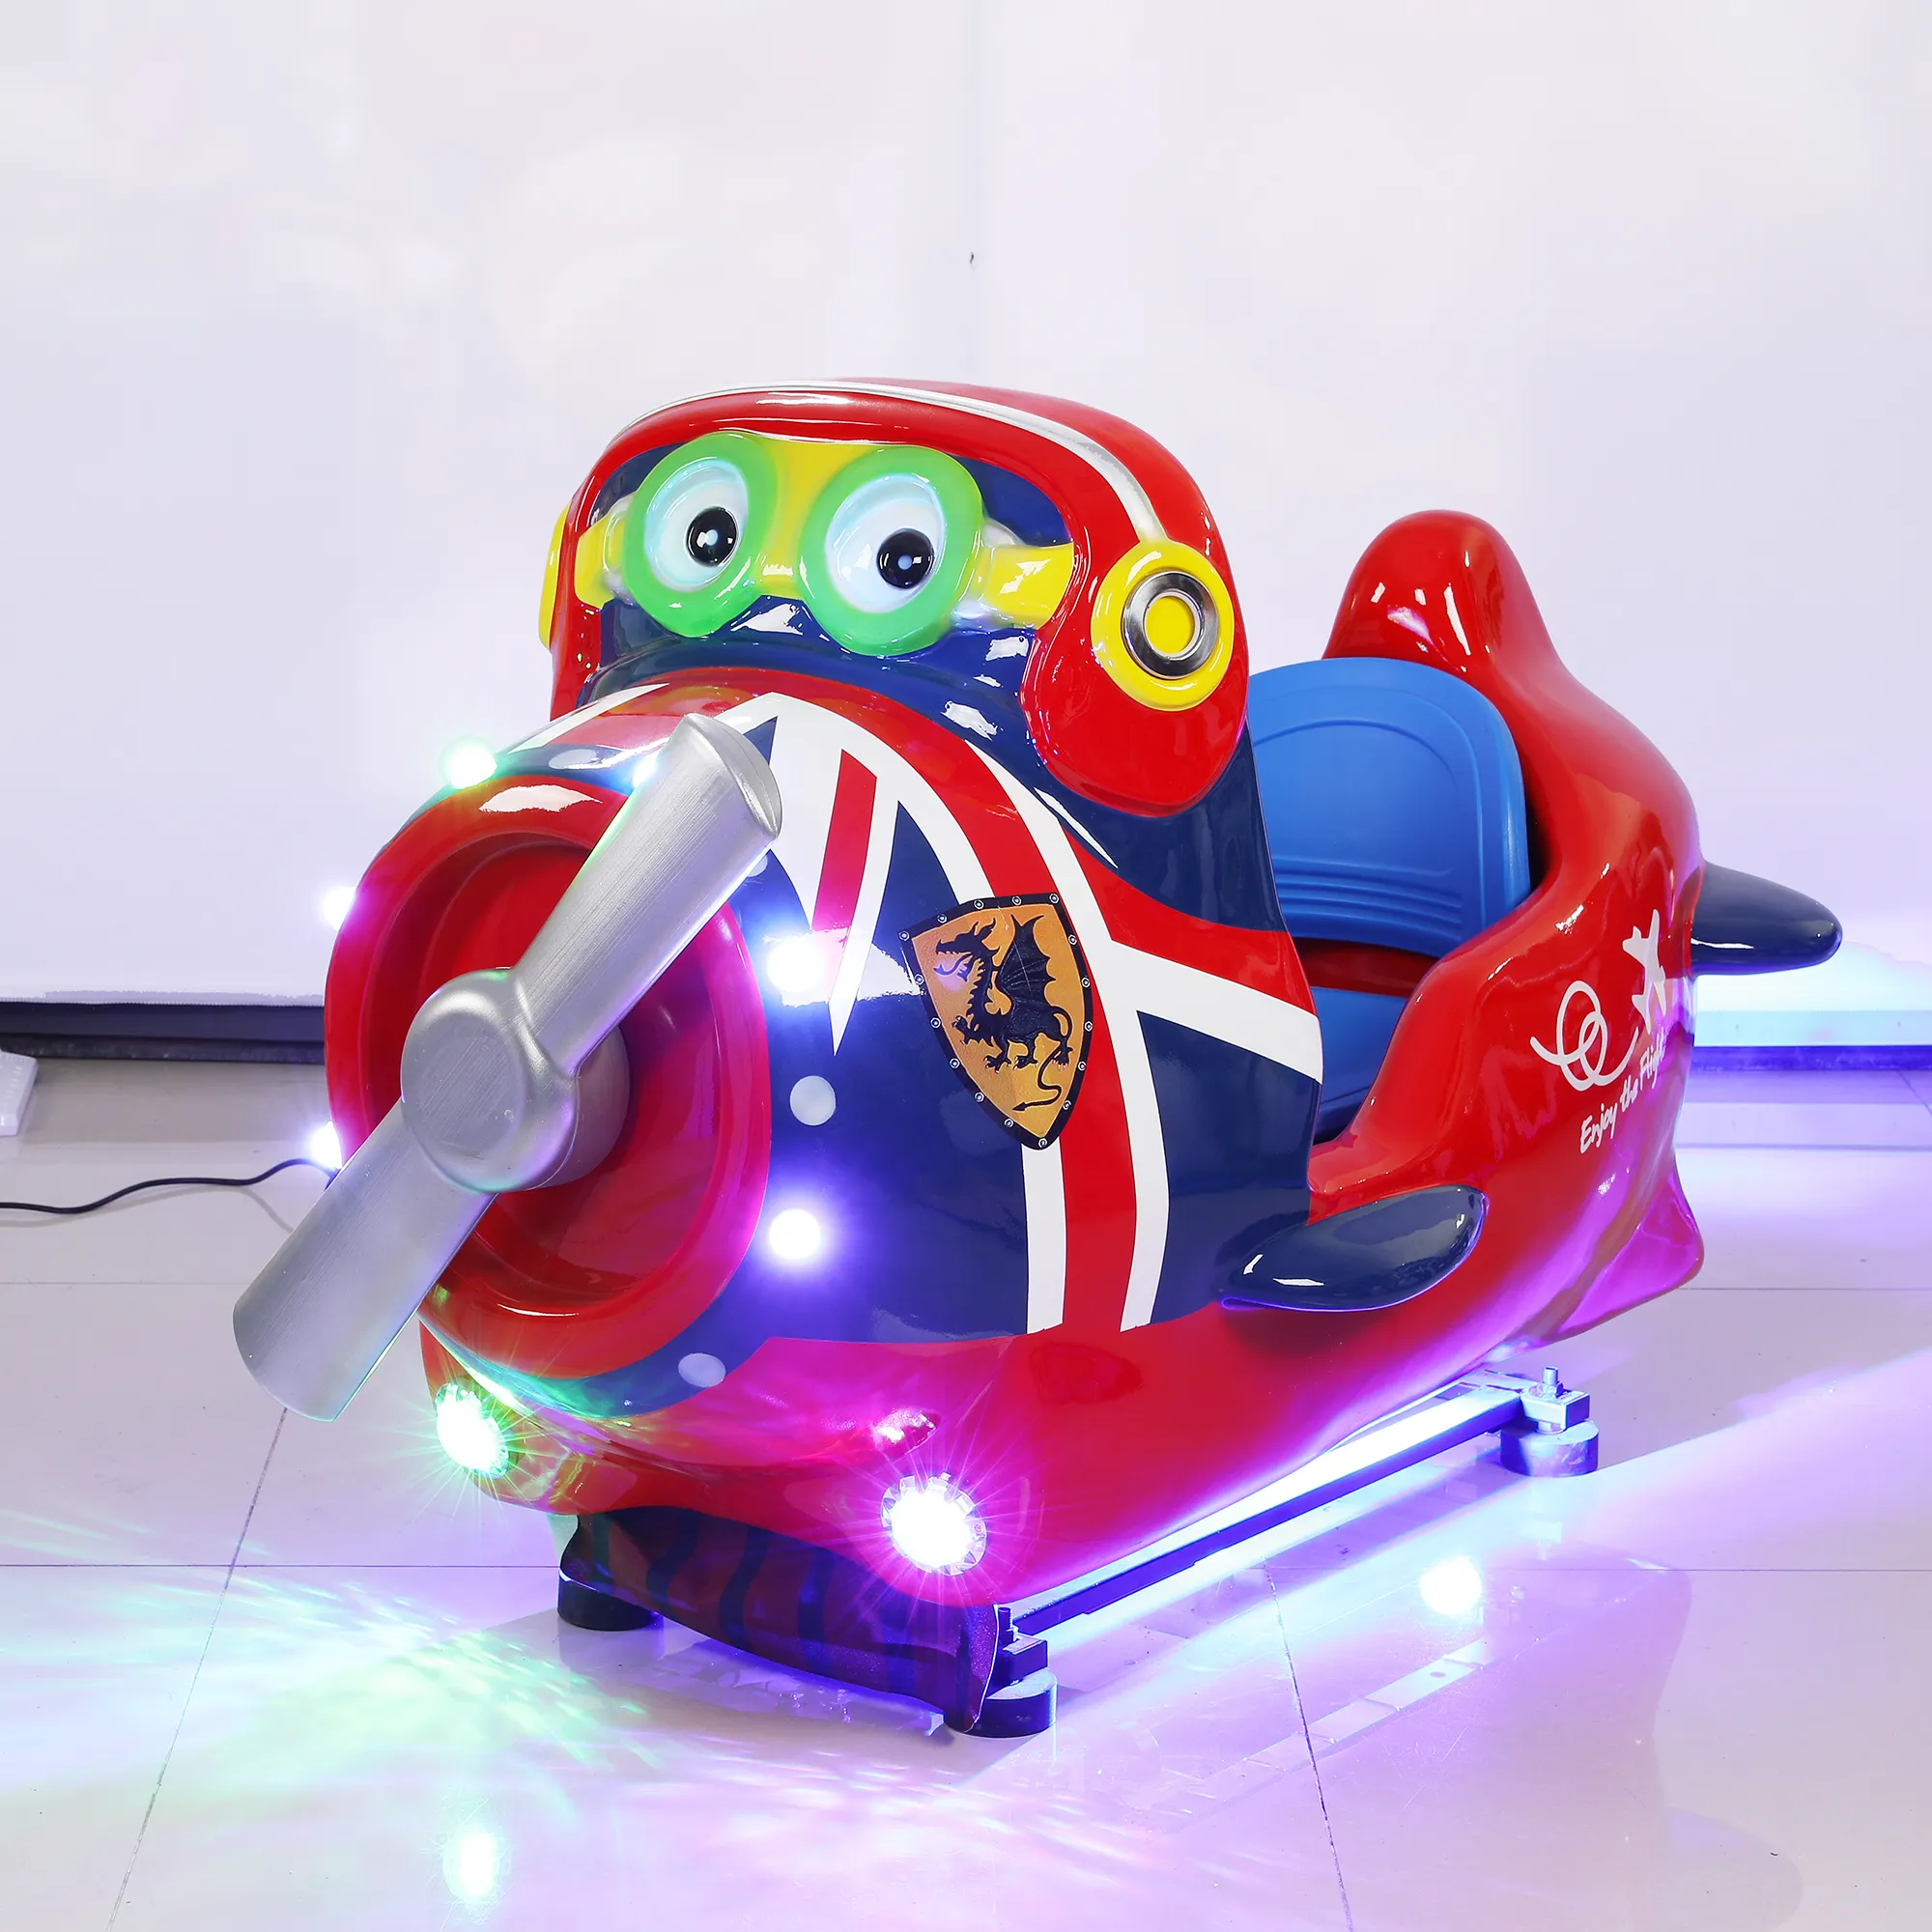 Hochwertige KA-140 fahrten Kinder Münz betriebene Vergnügung maschine Kiddie Car Rides Toys Indoor